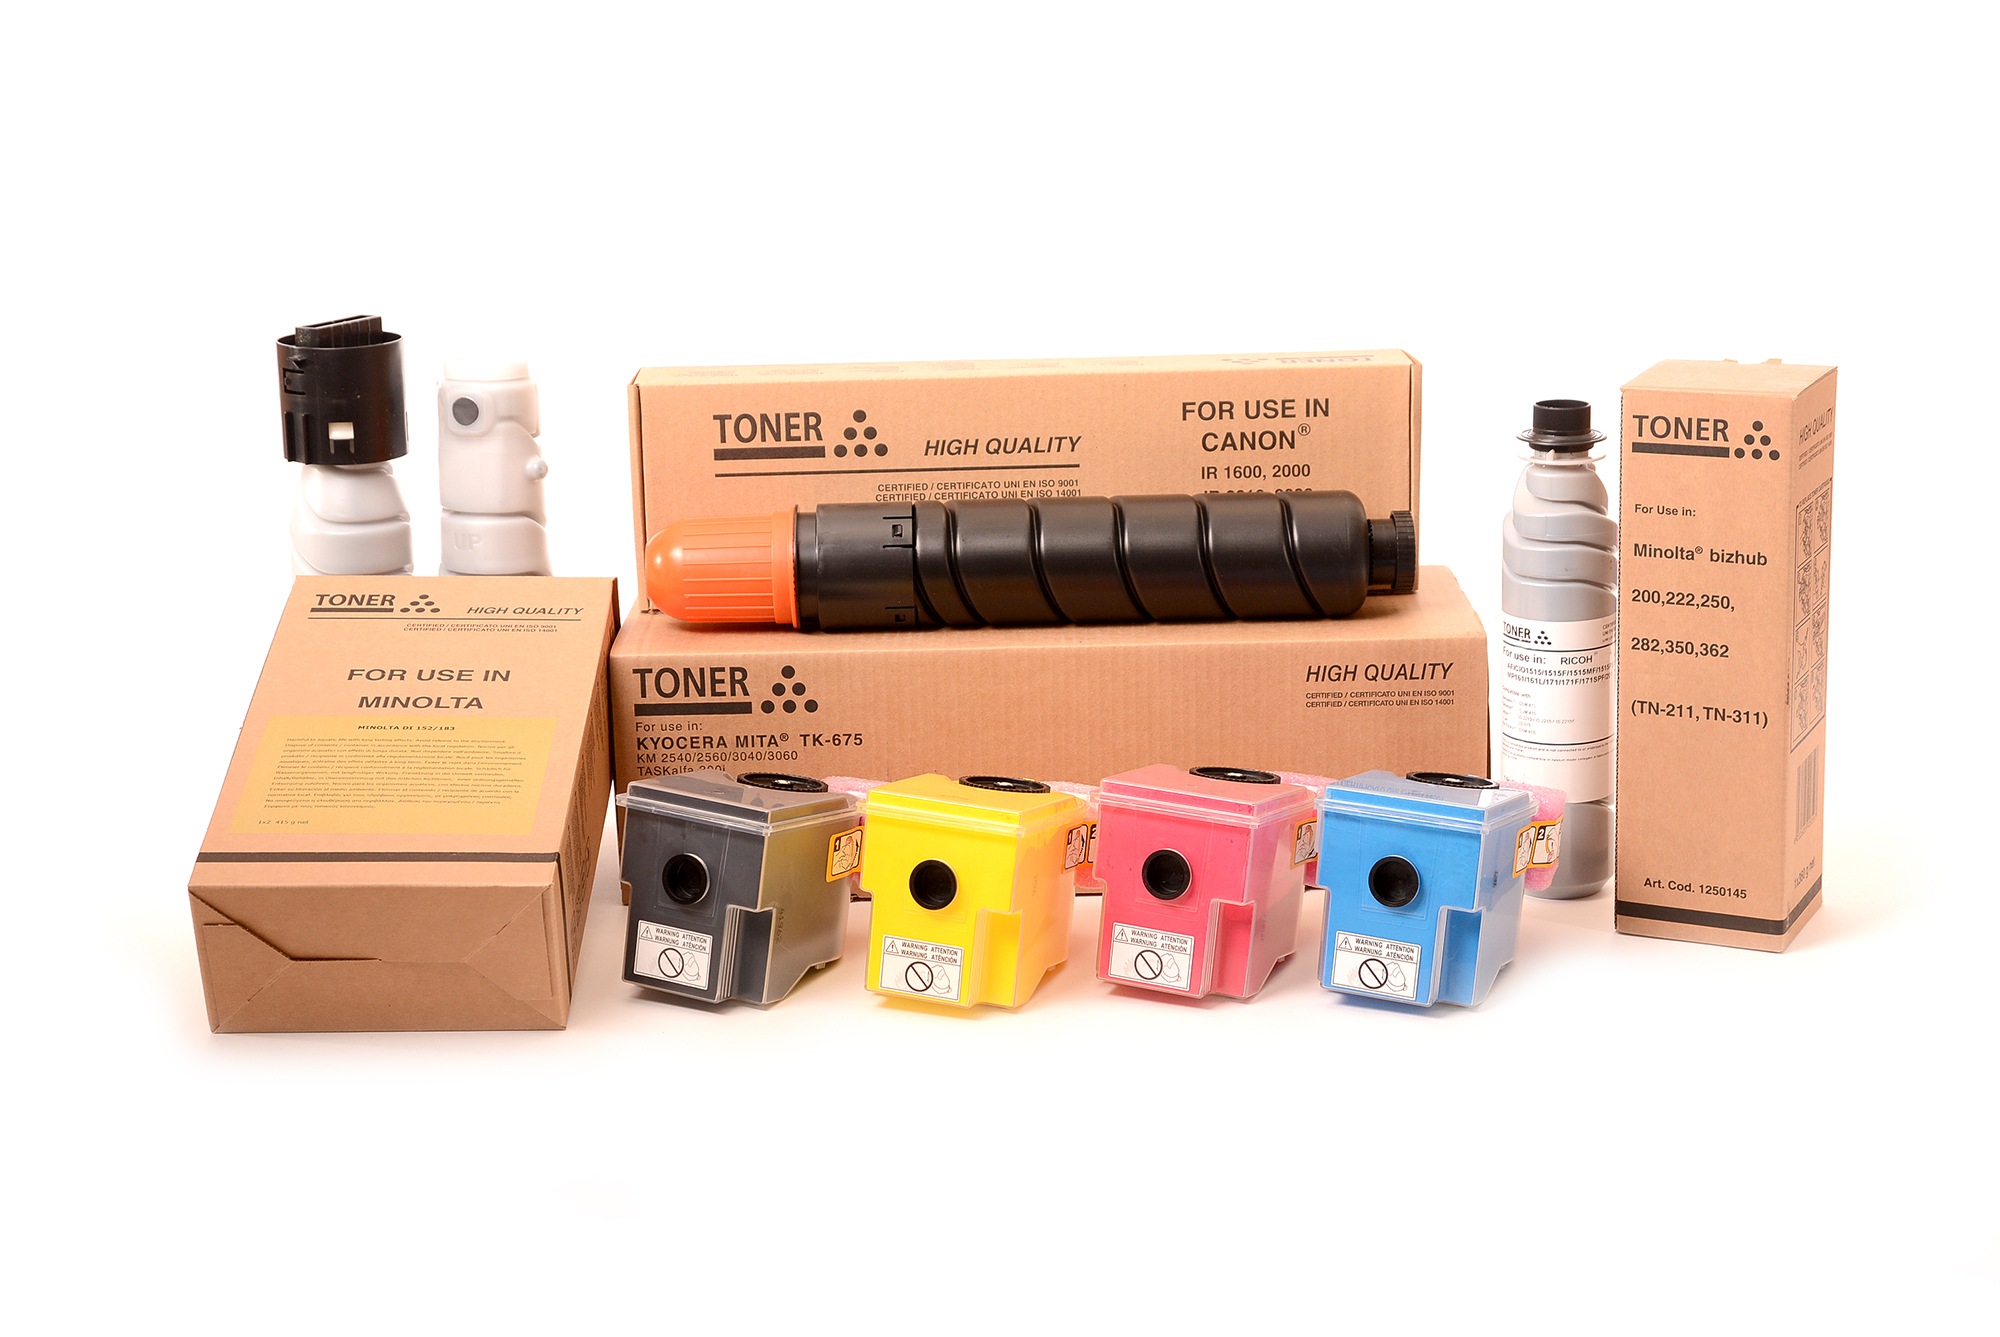 Тонер касета за принтери и печатащи устройства на Konica Minolta Bizhub 363 TN-414. Ниски цени, прецизно изпълнение, високо качество.